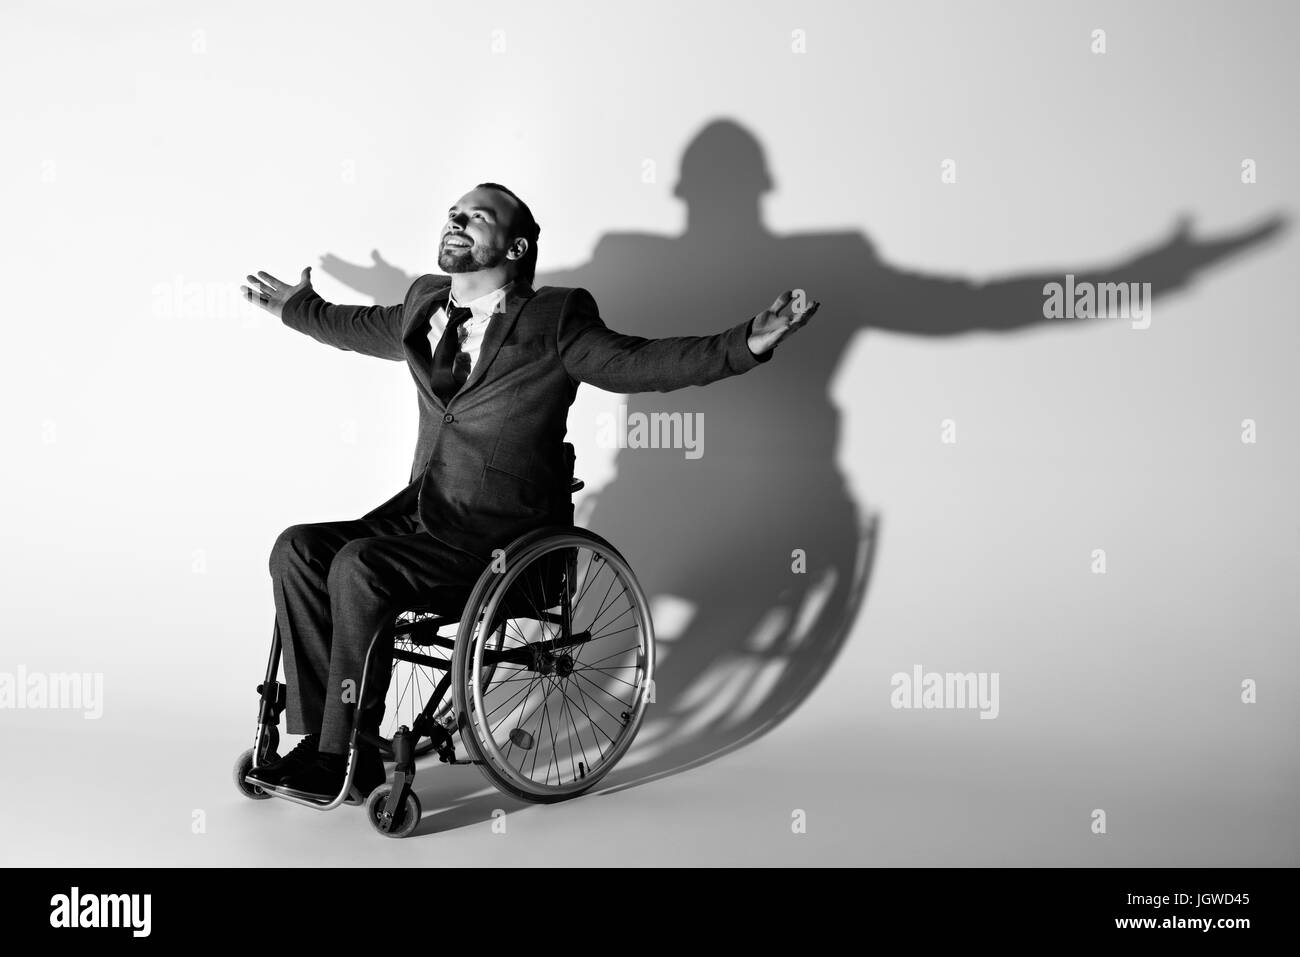 Allegro imprenditore nel soddisfare seduto nella sedia a rotelle gesticolando con ombra sul muro bianco, bianco e nero Foto Stock